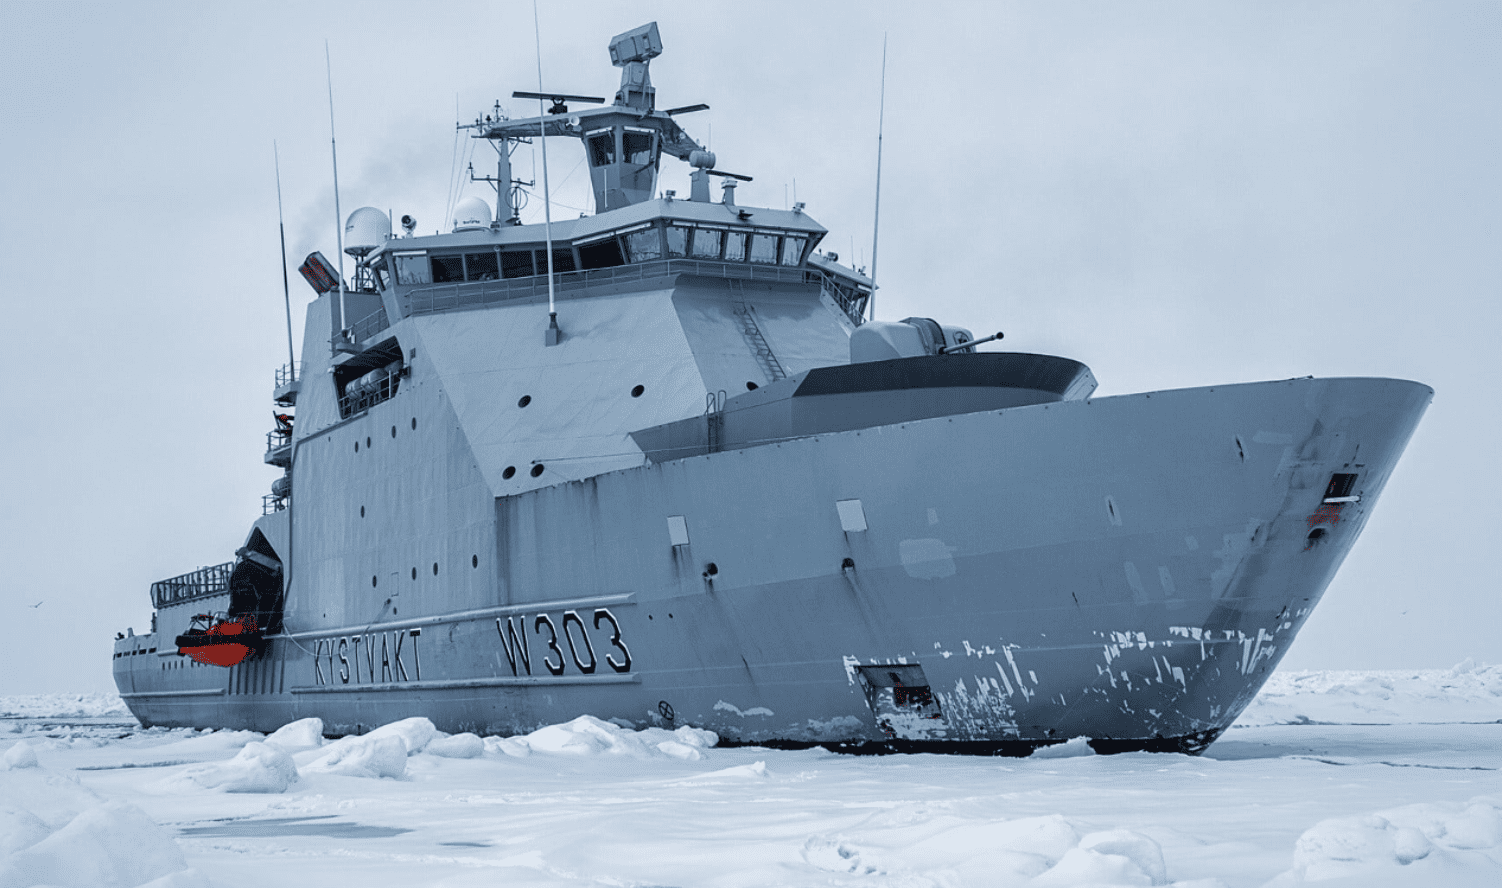 La Norvegia subentra alla Russia alla guida del consiglio Artico: si apre uno spiraglio diplomatico